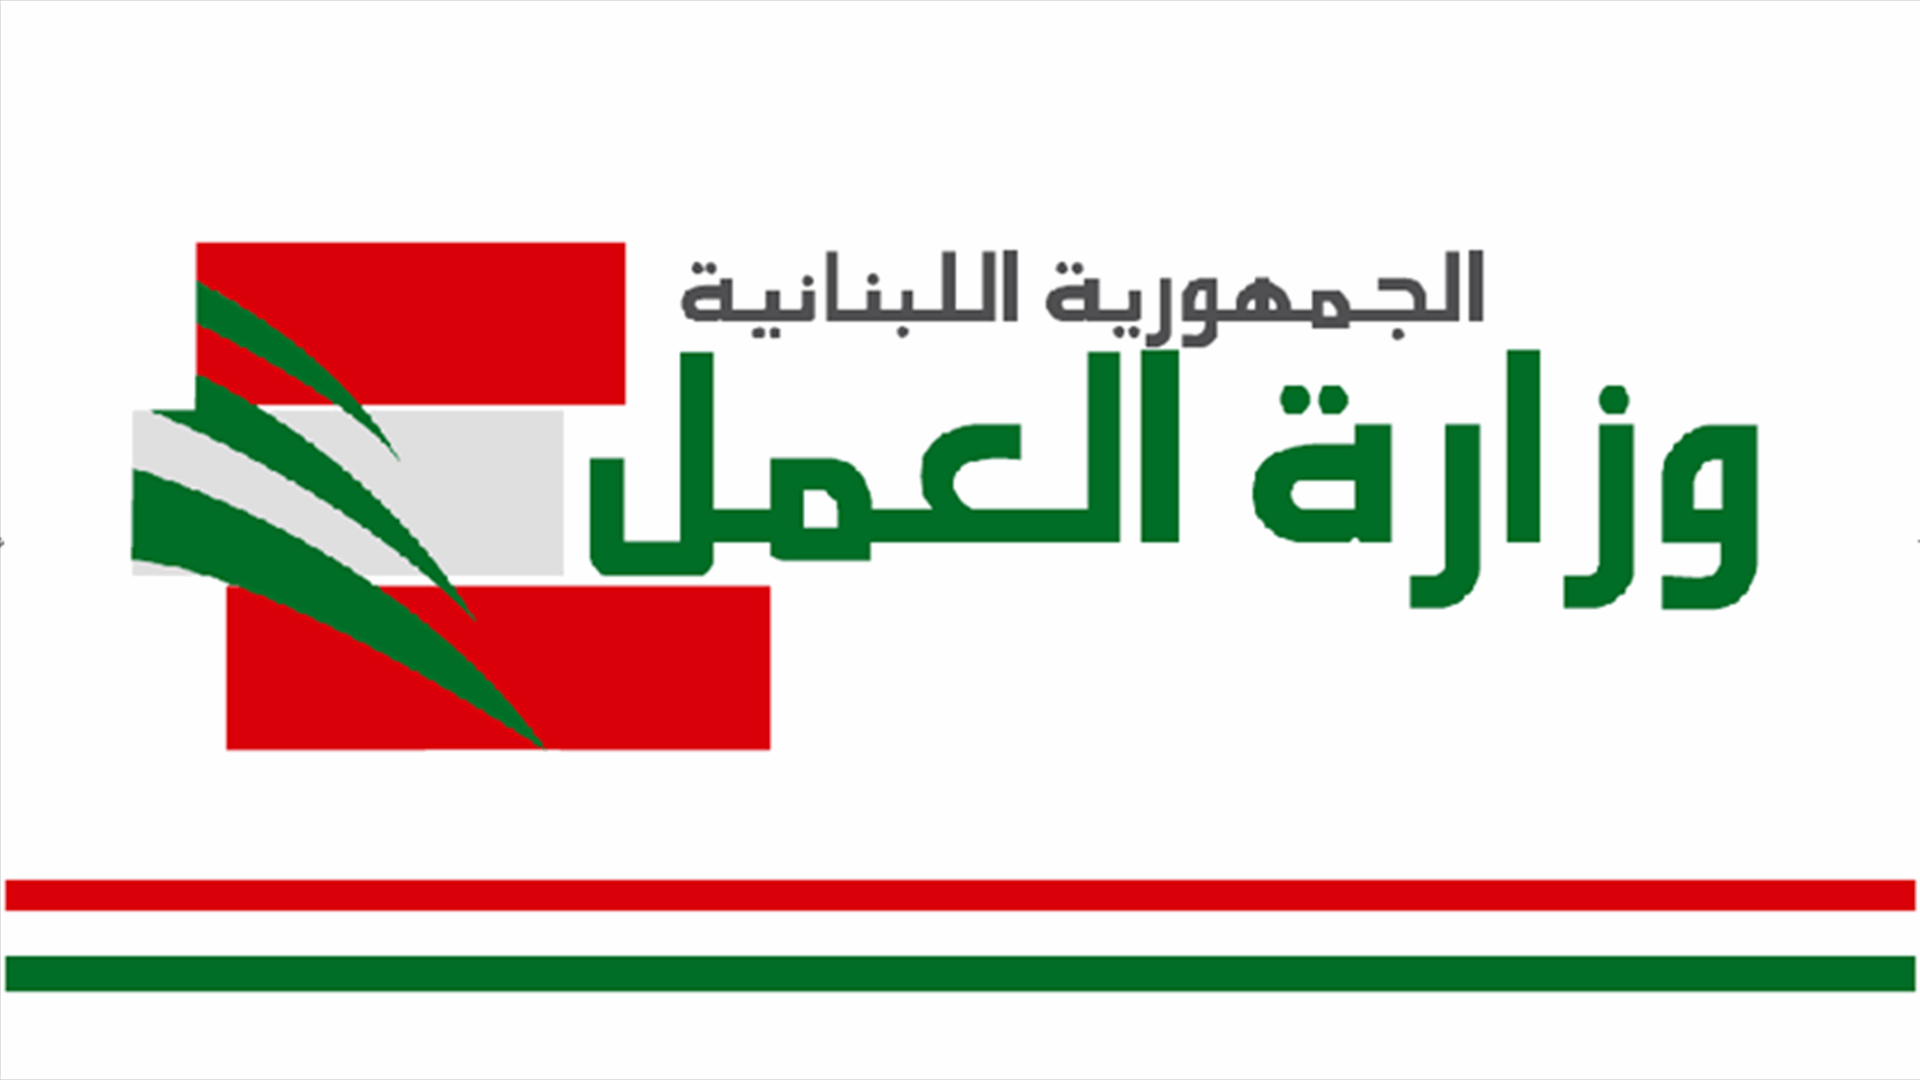 وزارة العمل: نعمل لإقفال مؤسسات غير مرخصة تنافس اللبنانيين